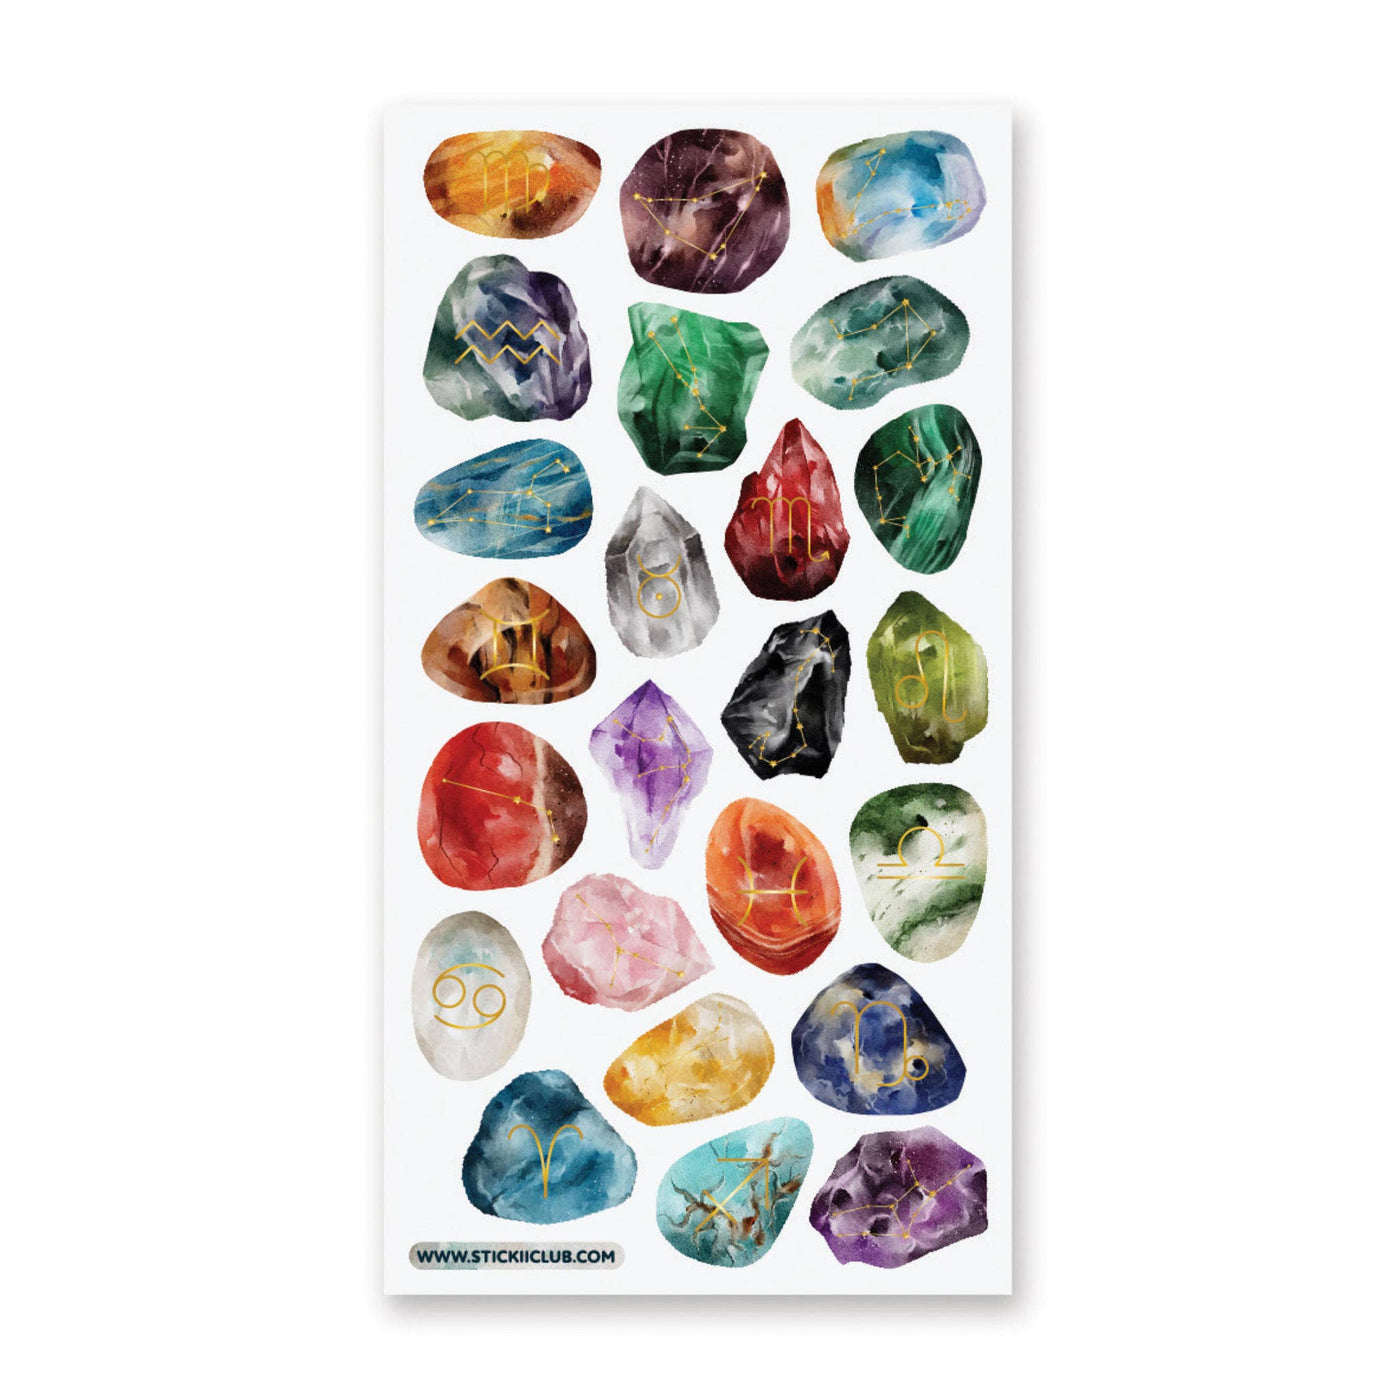 Constellation Crystals - Sticker Sheet